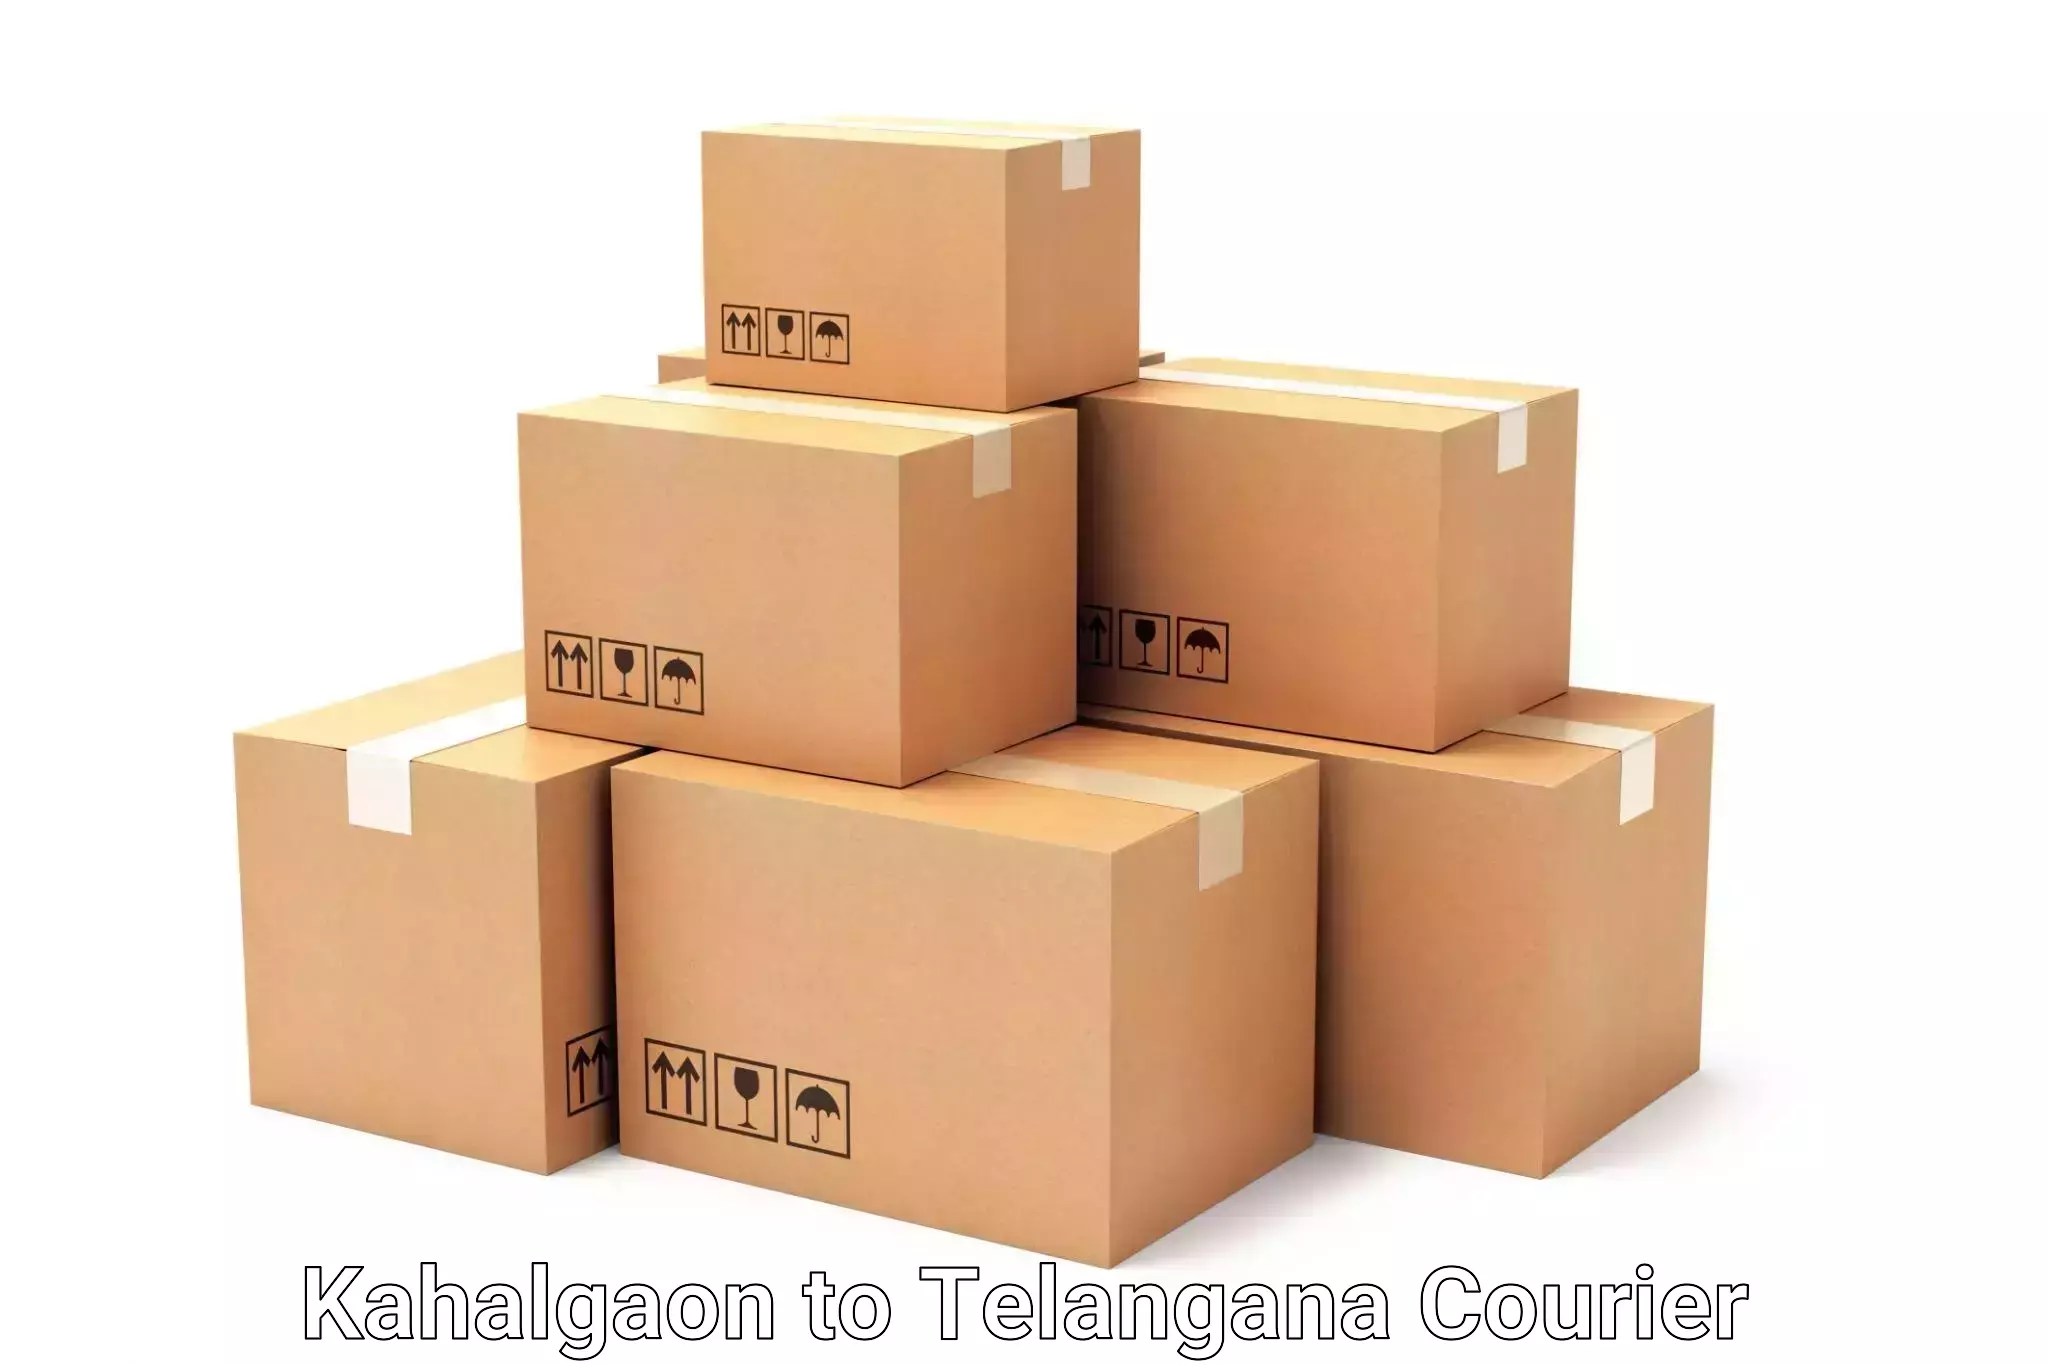 Luggage delivery optimization Kahalgaon to Telangana